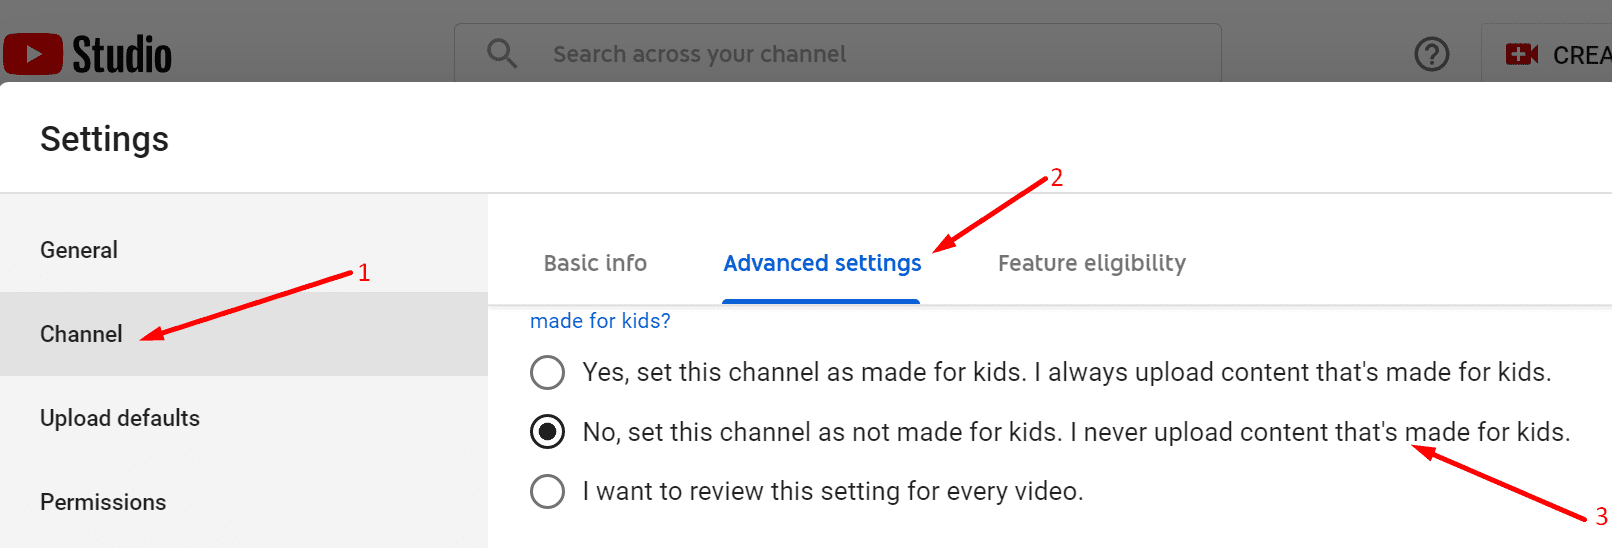 thiết lập một kênh YouTube không dành cho trẻ em